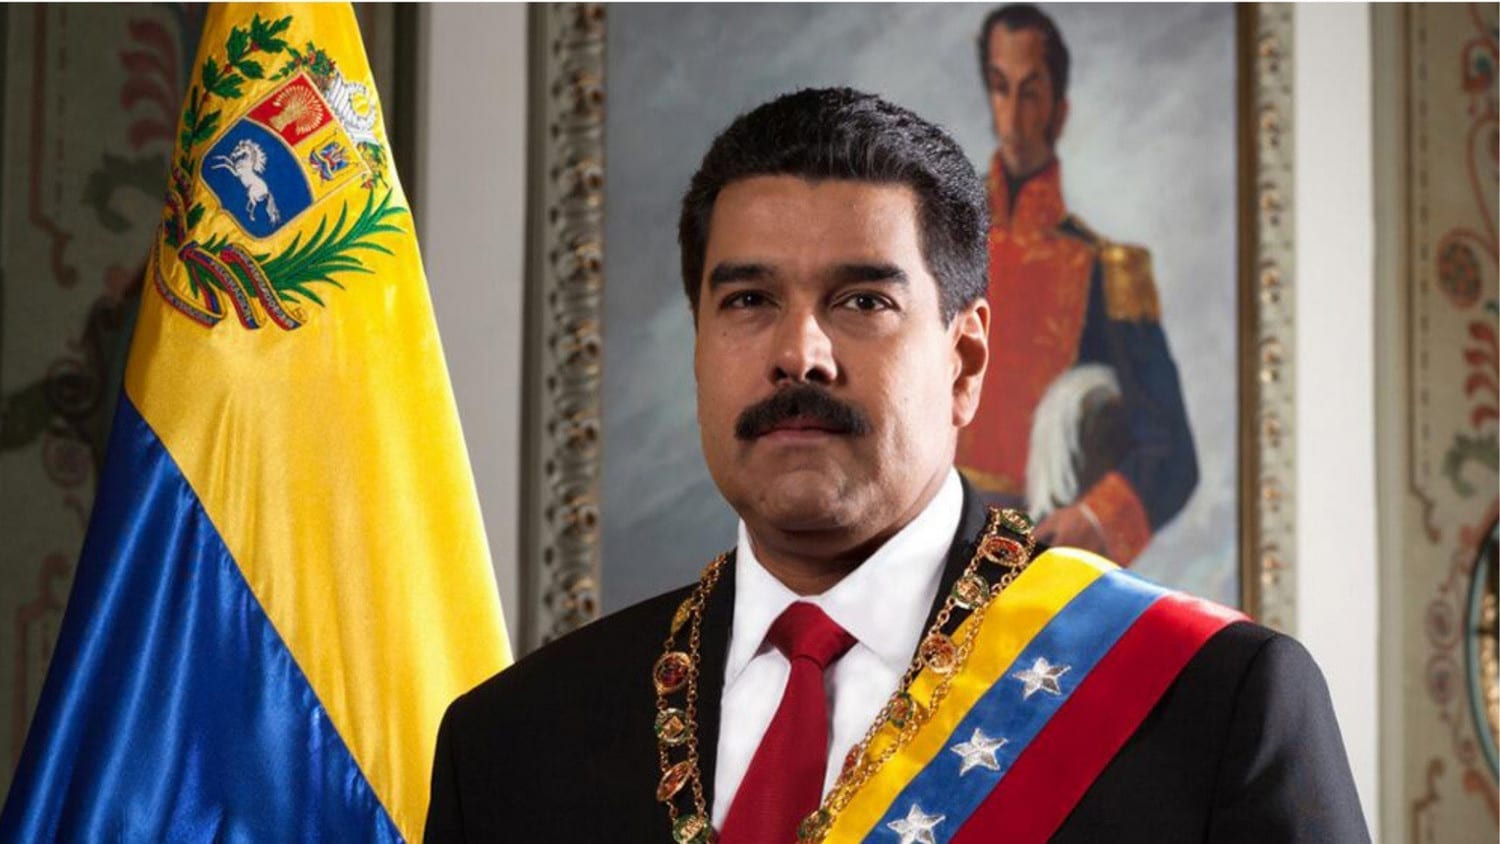 20190124-160400-Nicolas_Maduro_Presidente_2019-2025-wikipedia.jpg (279.95 KB)